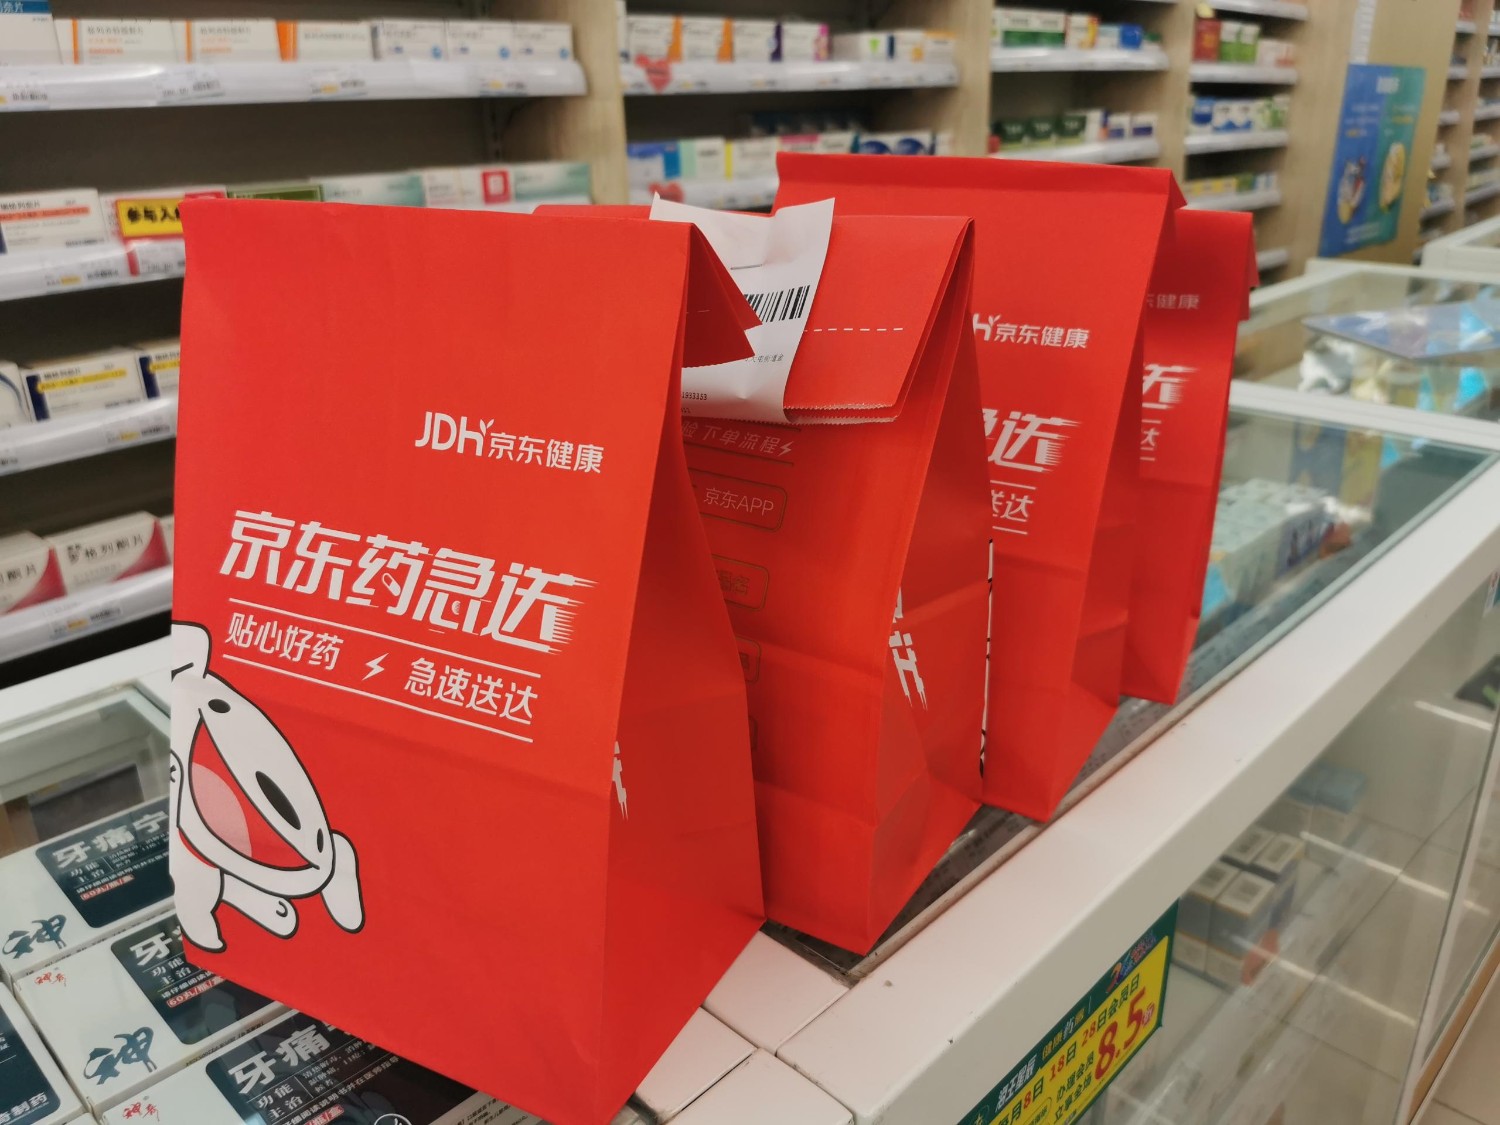 京东健康药品与医用耗材备货充足 北京现有货量至少可满足用户30天日常需求